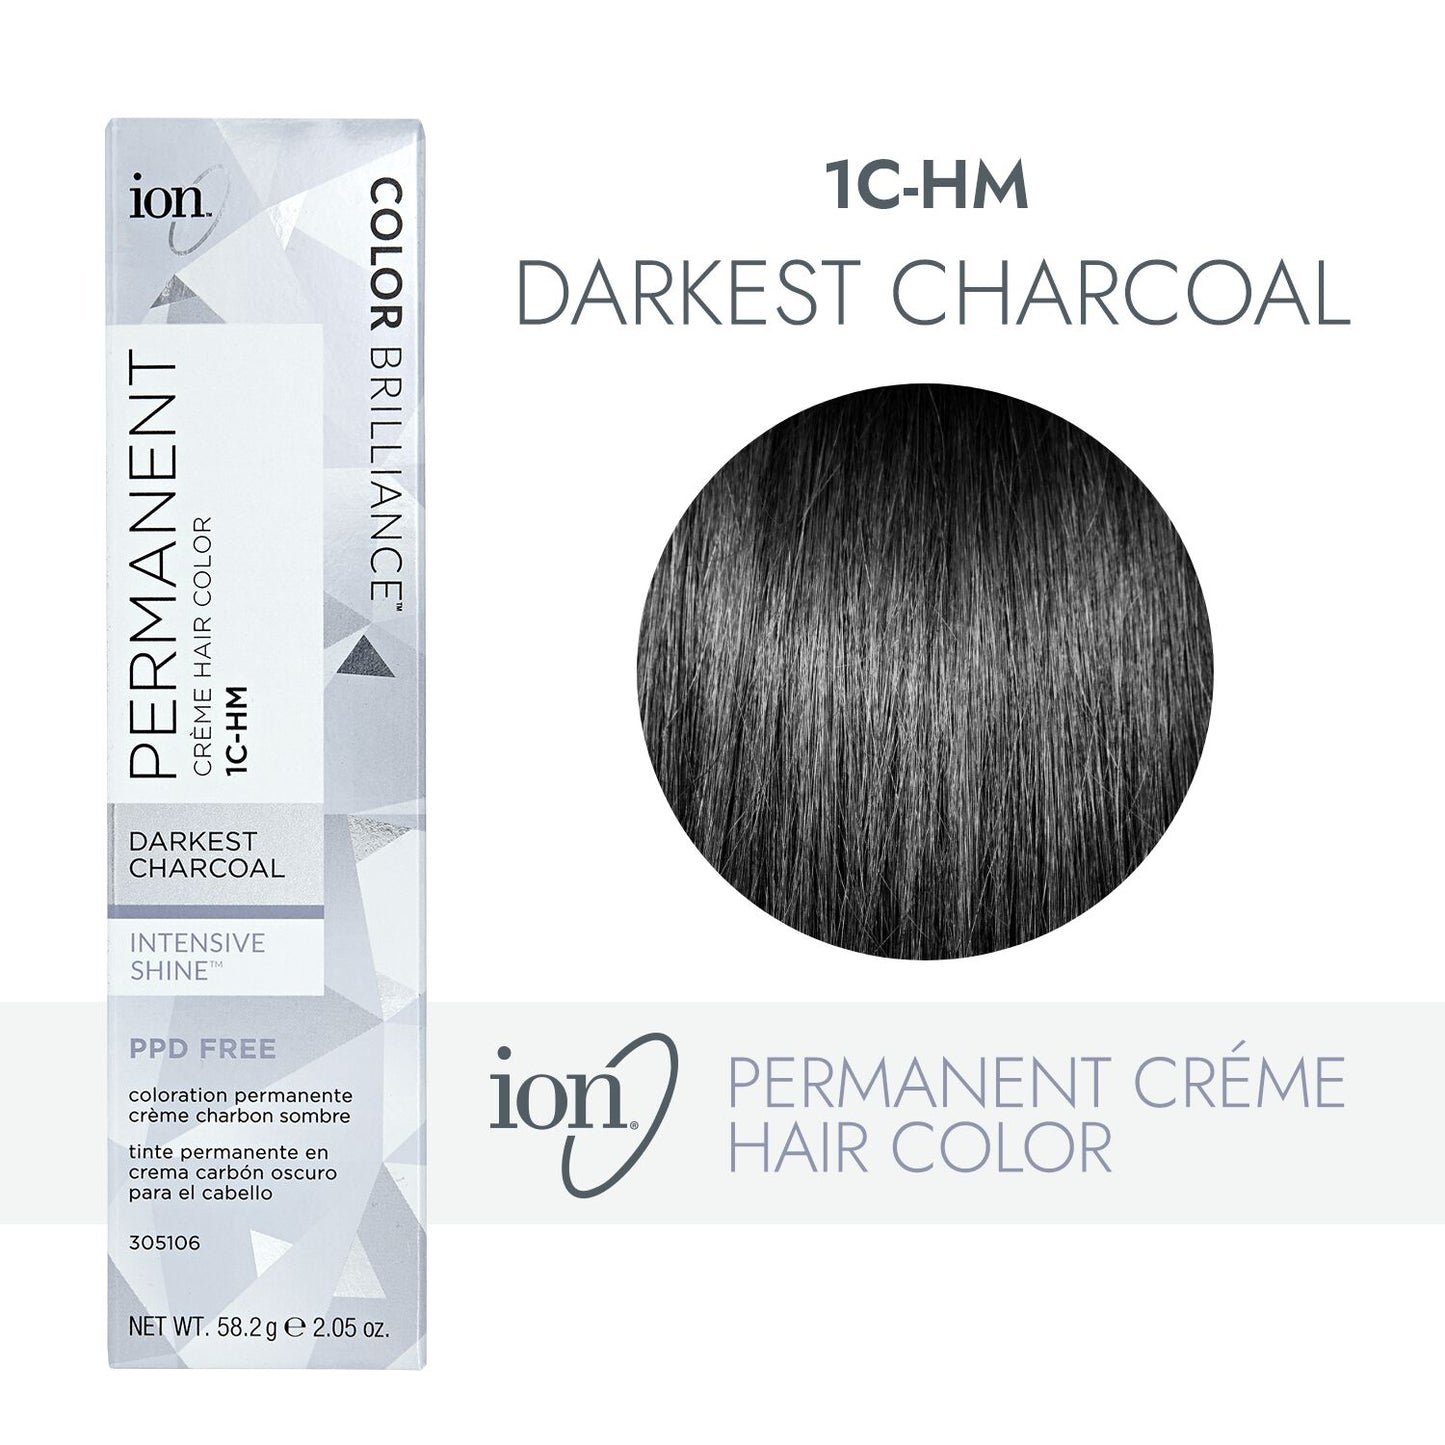 ion 1C-HM Darkest Charcoal Permanent Creme Hair Color